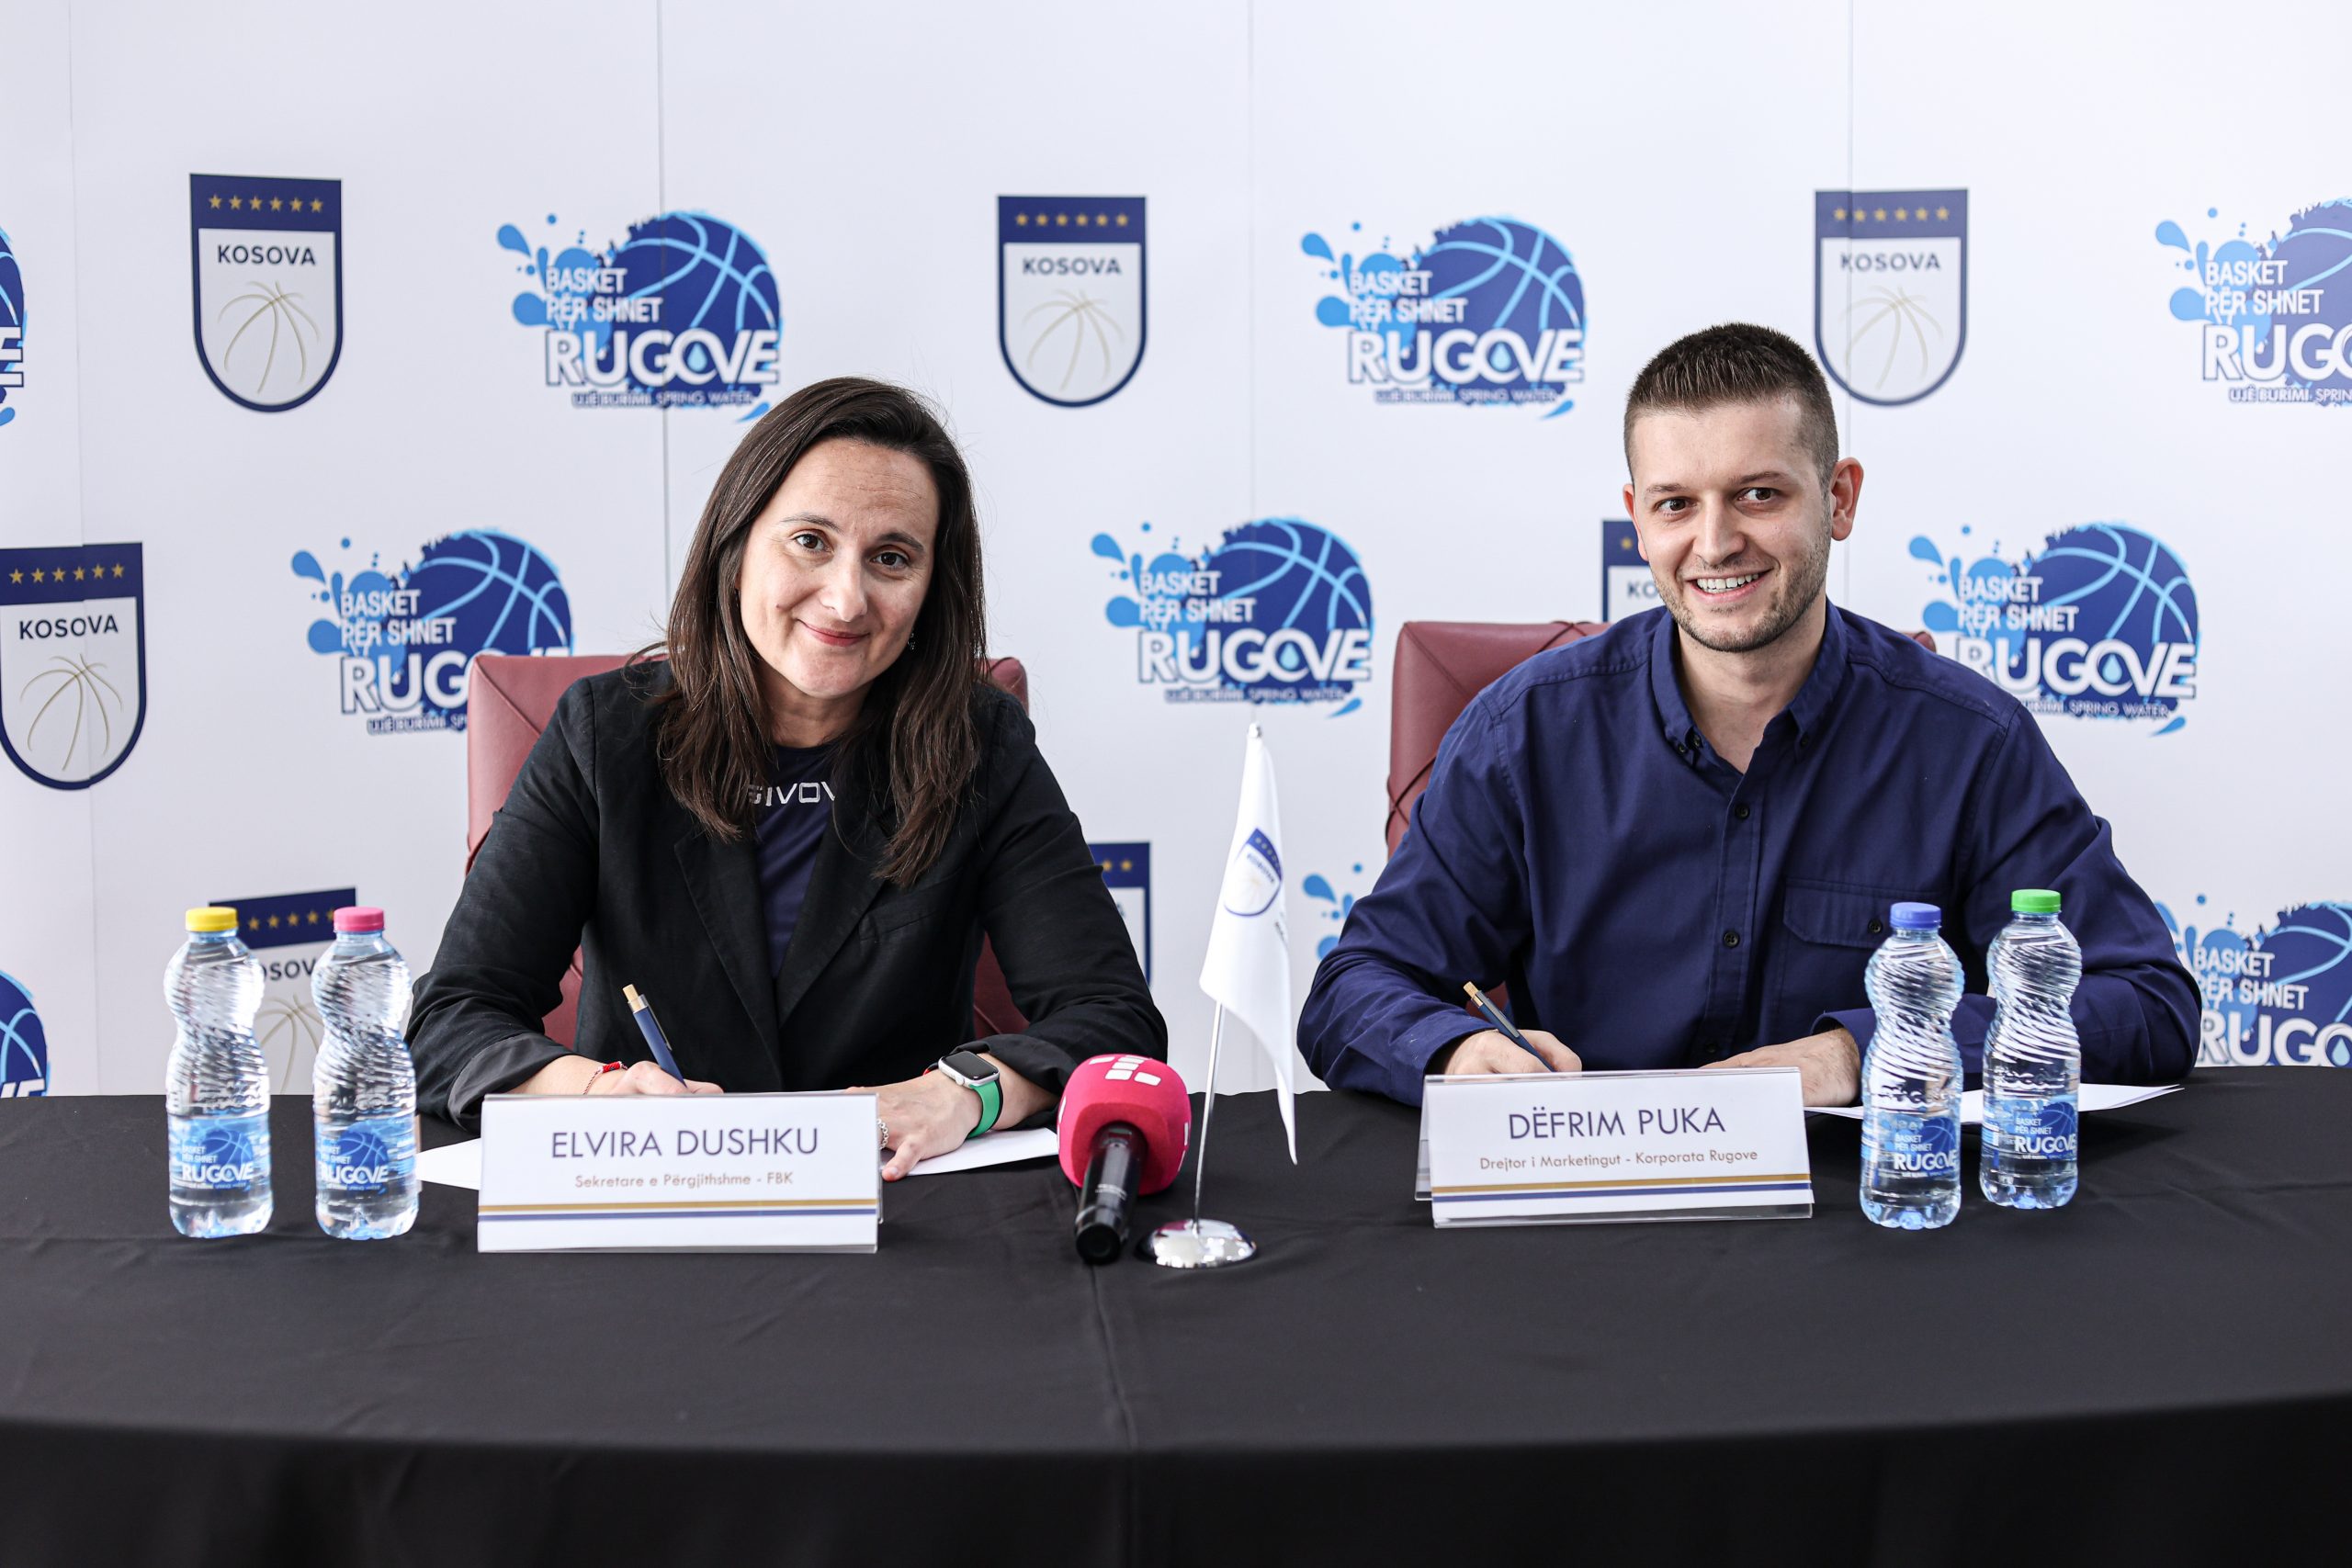 Nënshkruhet Memorandumi i Bashkëpunimit dhe lansohet kampanja “Basket për shnet”